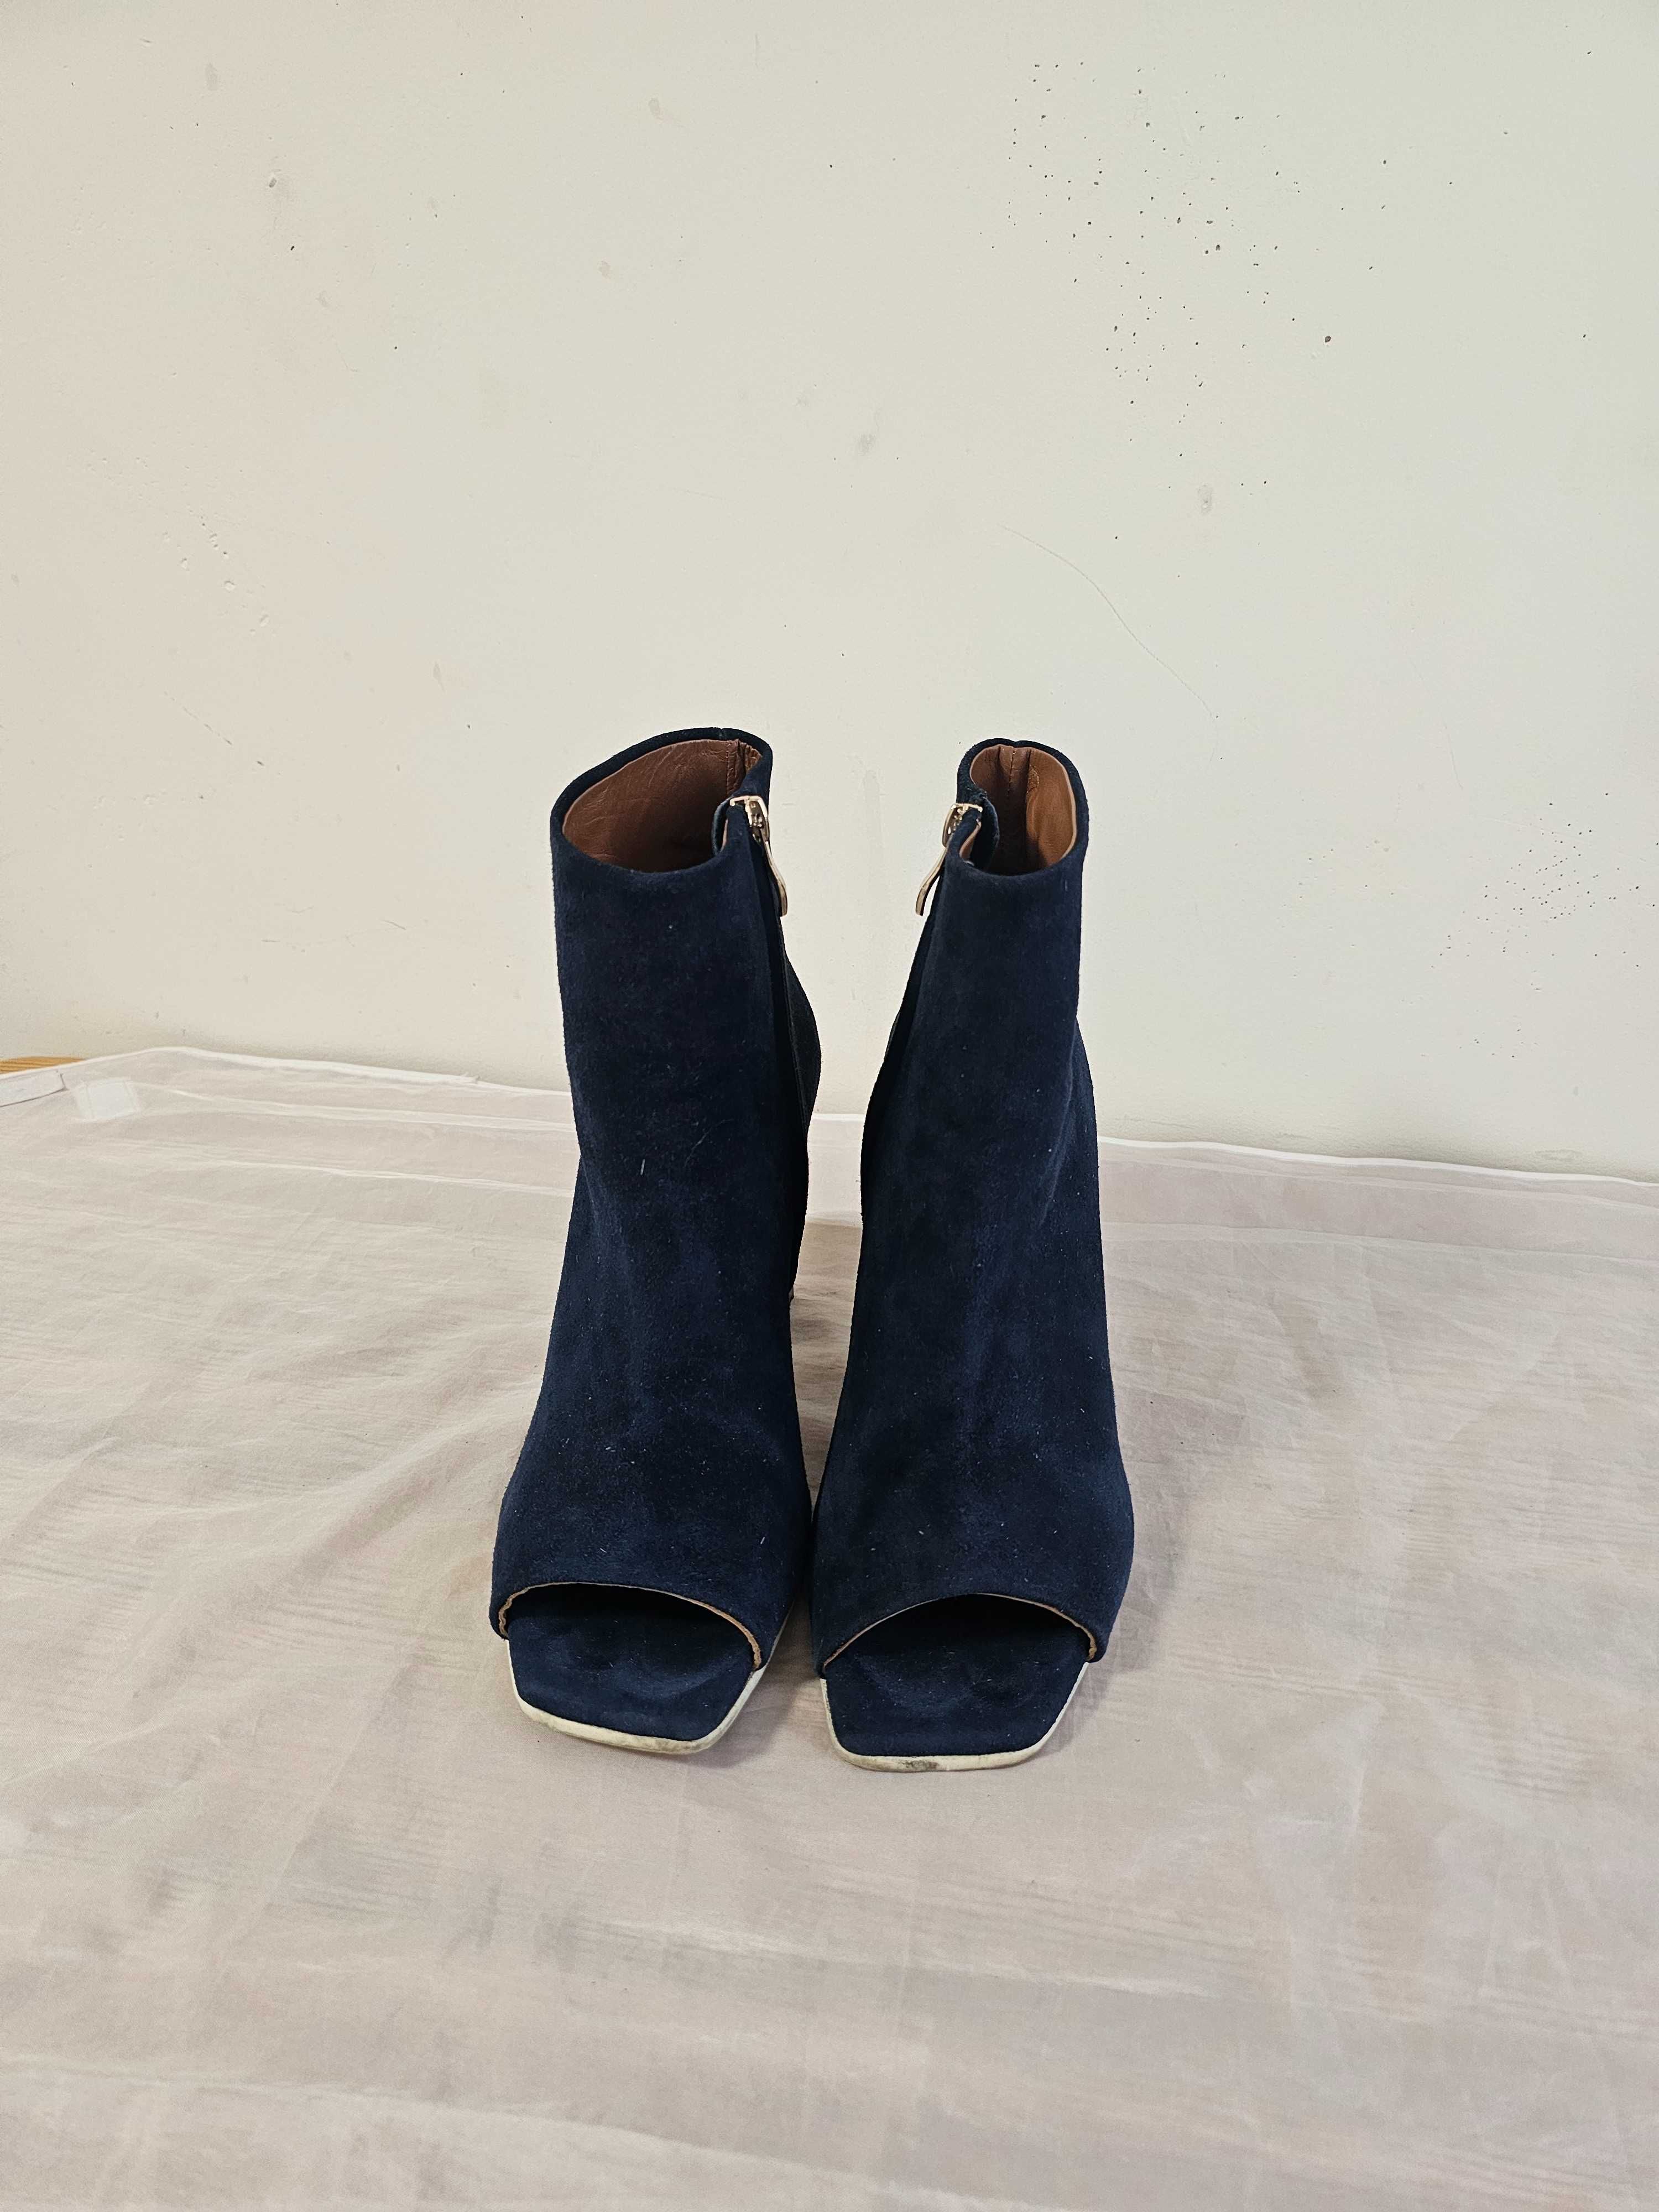 Buty sandały na obcasie z cholewką Baldowski r. 40 , wkł 26 cm